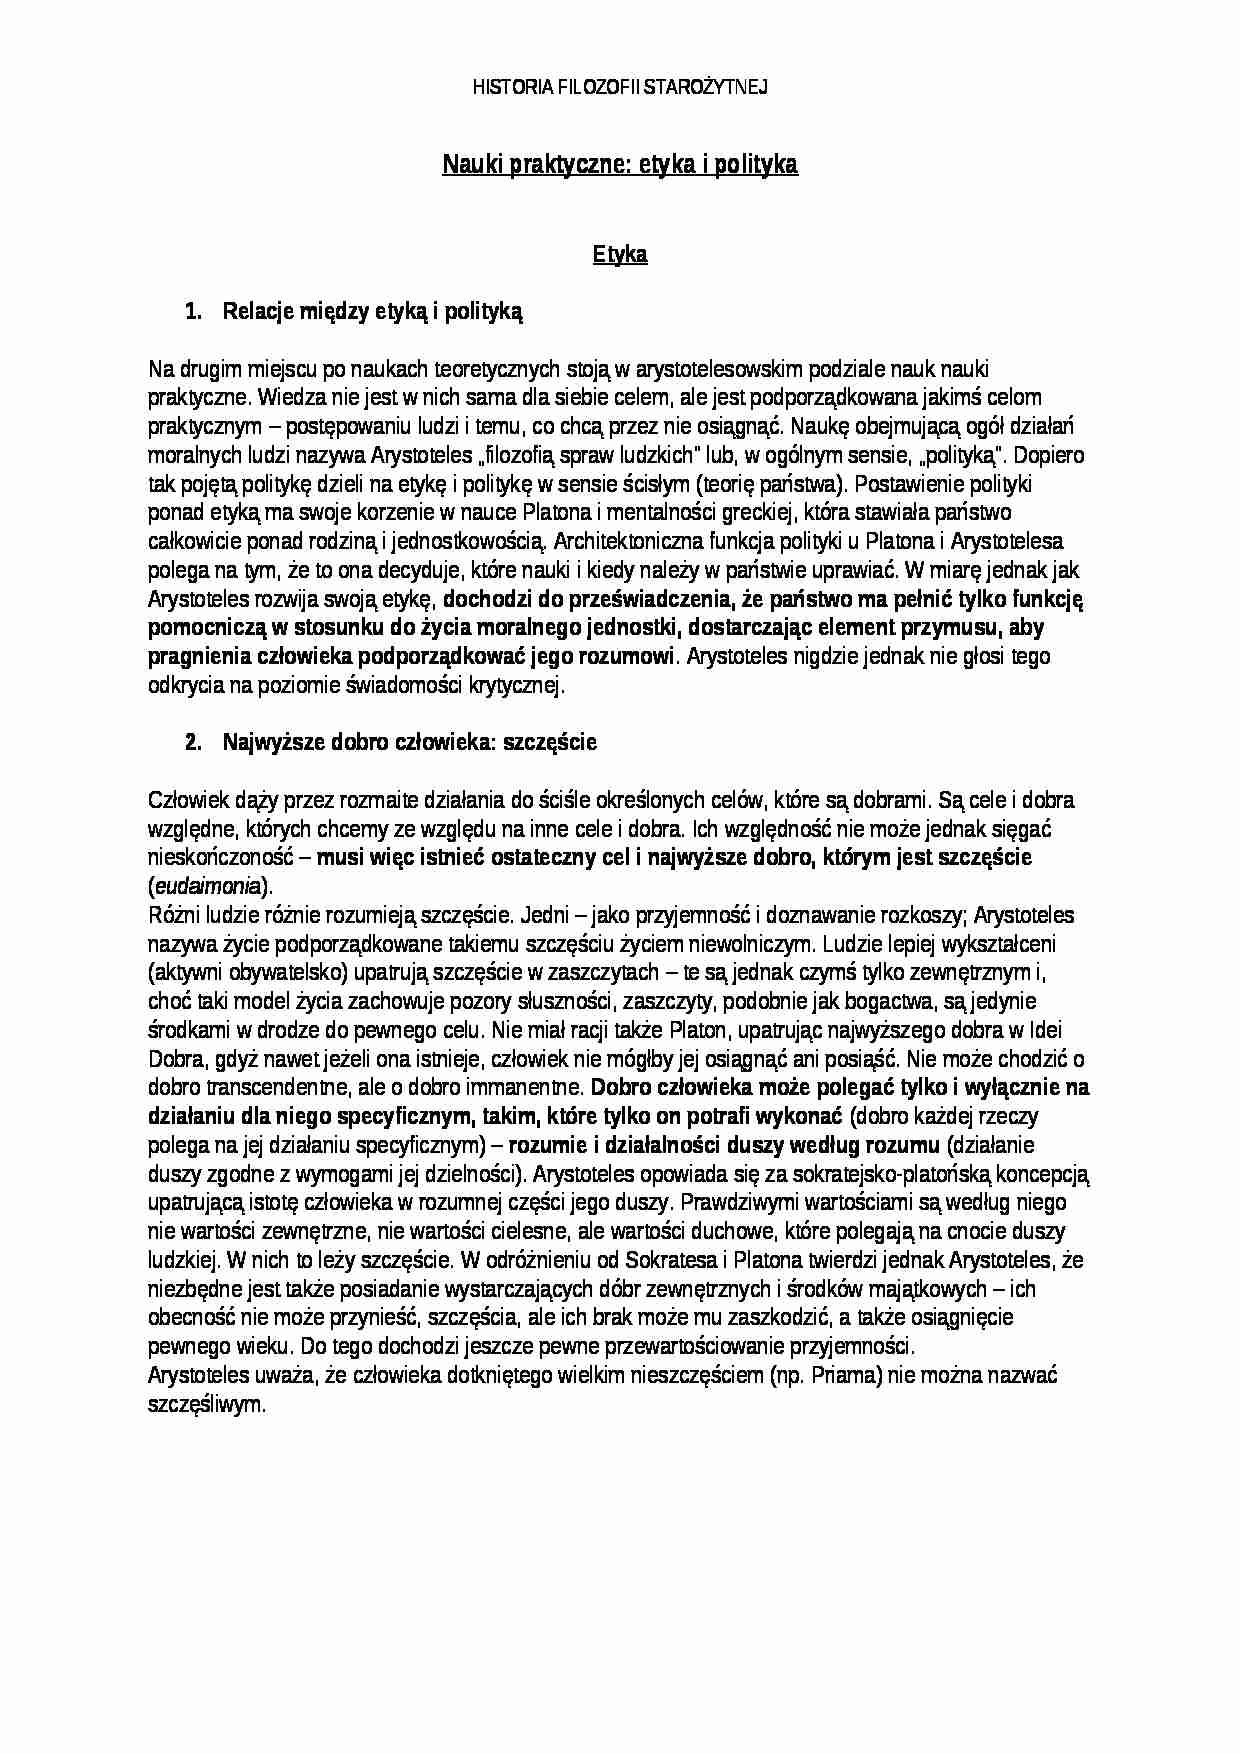 Nauki praktyczne - etyka i polityka - strona 1